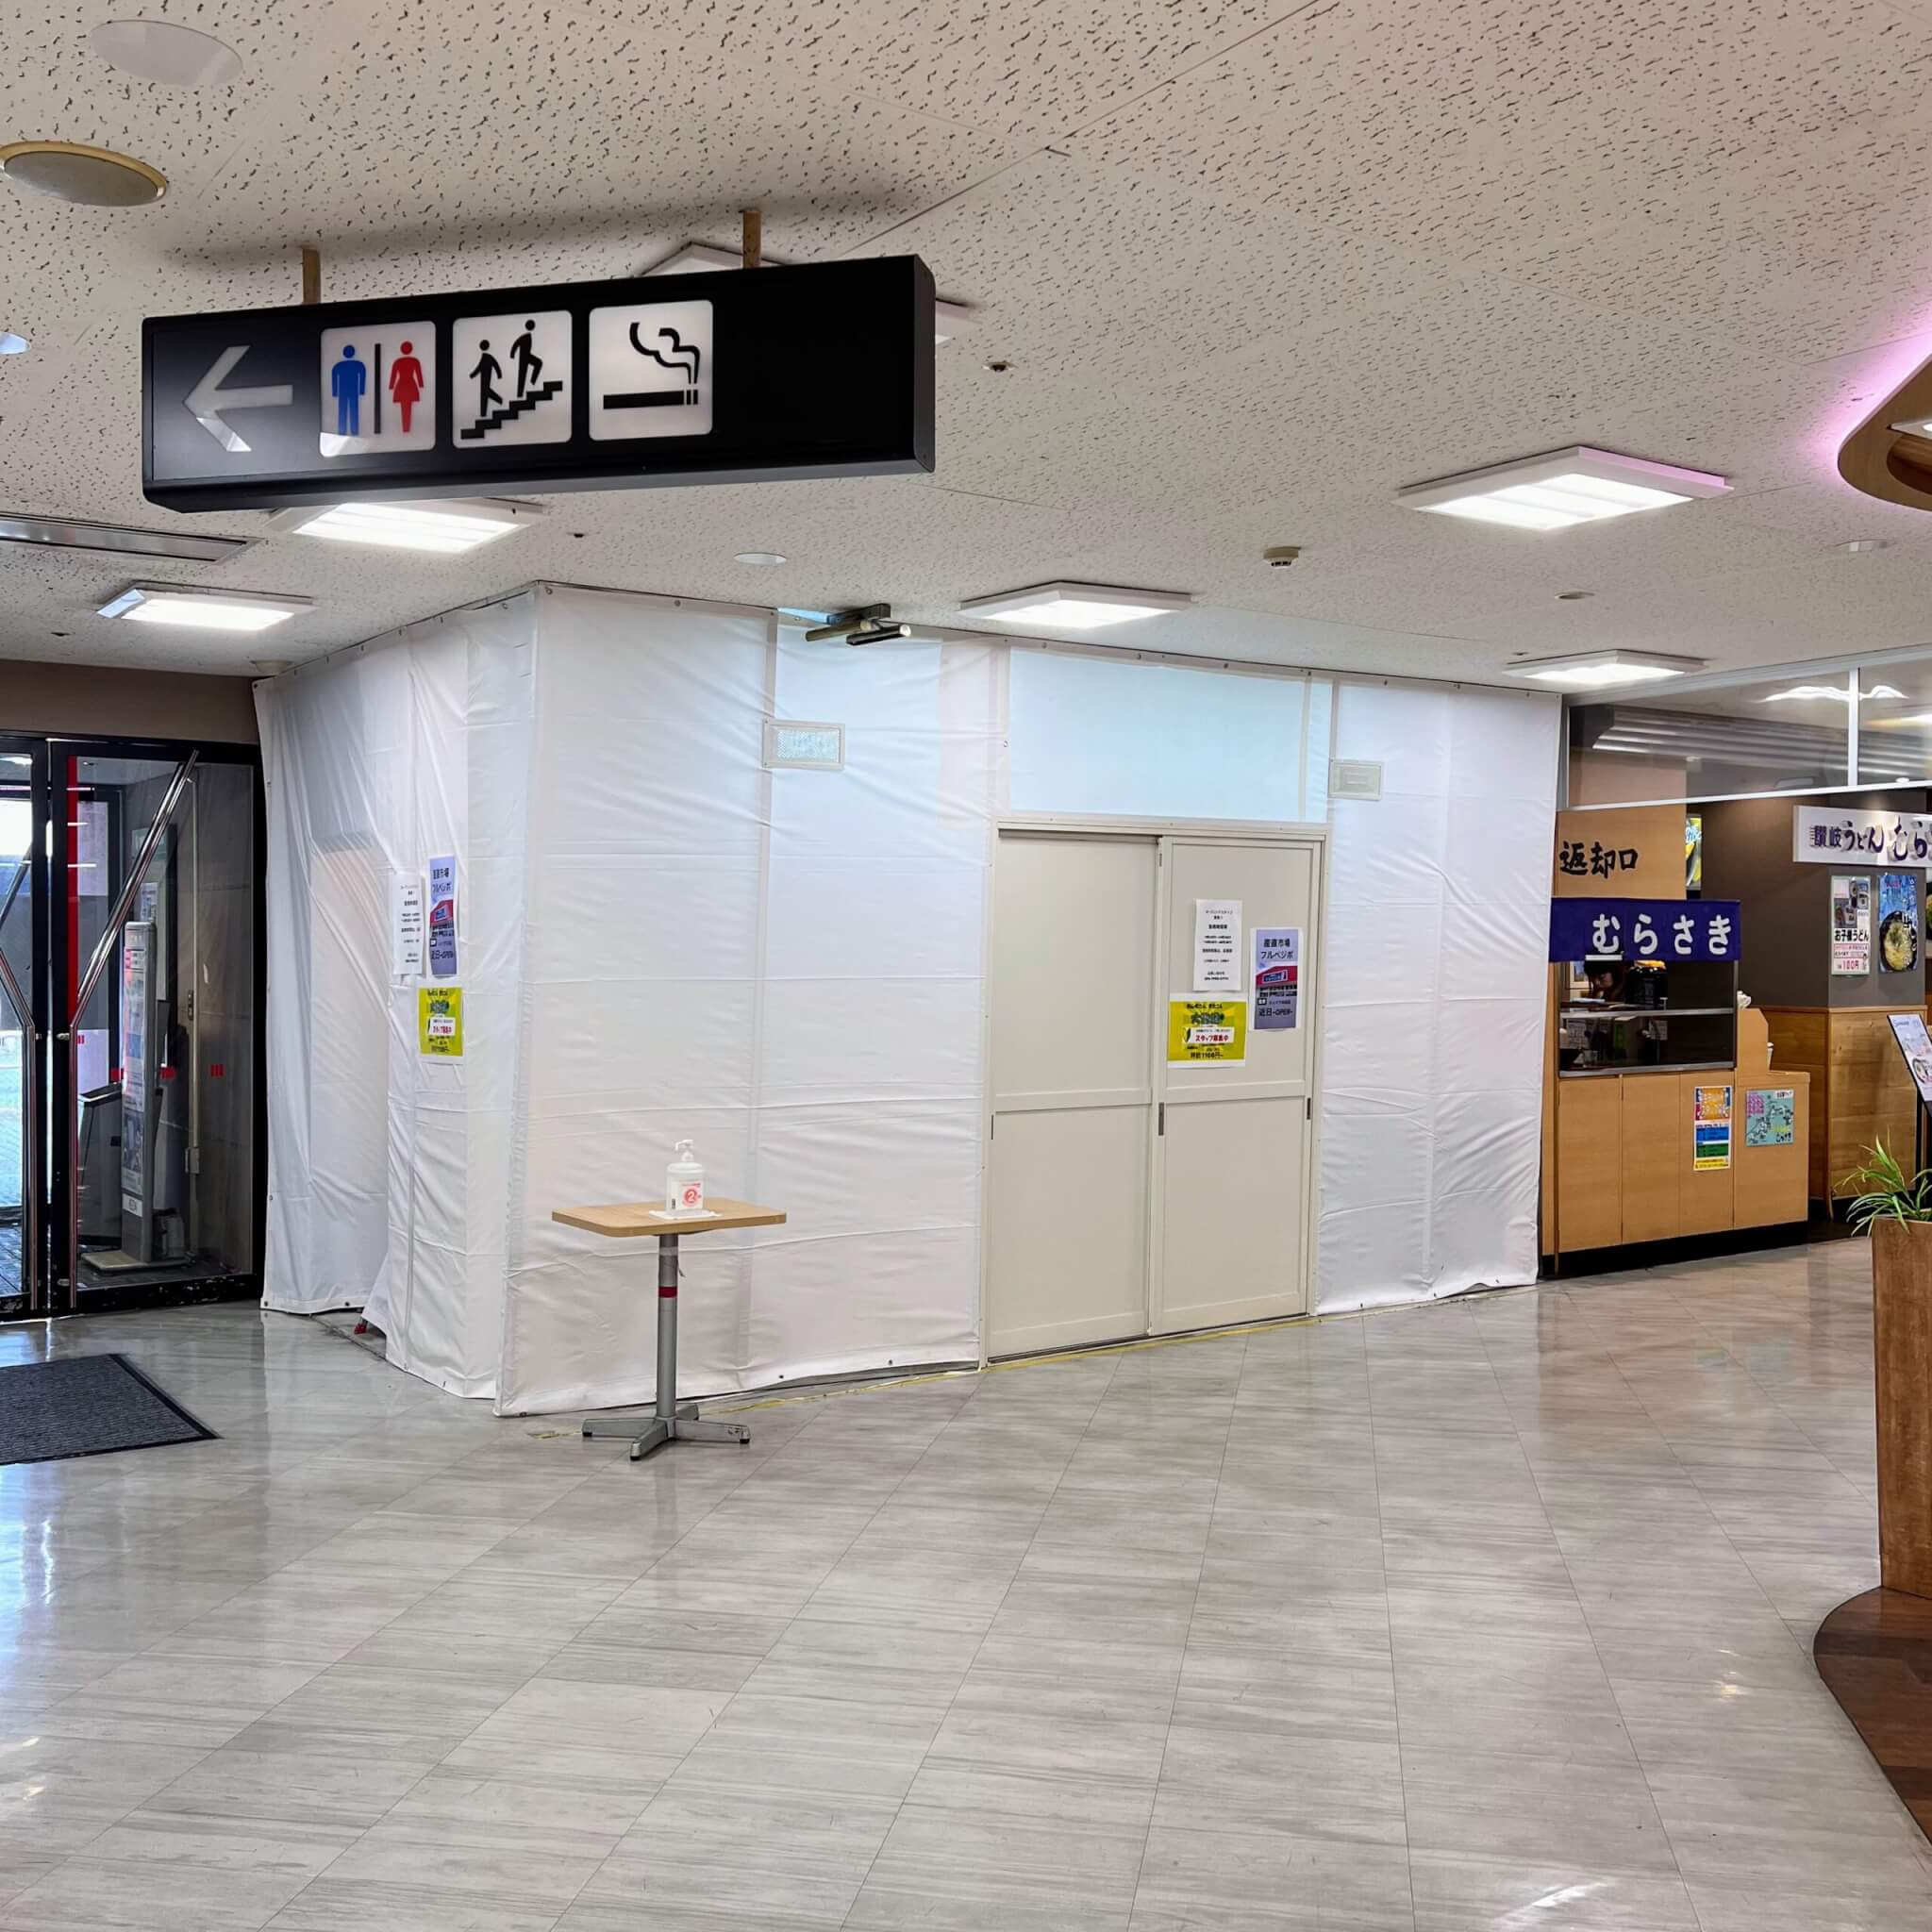 イオン加古川店内フードコートの産直市場フルベジポ監修のシェイクのお店ができる場所